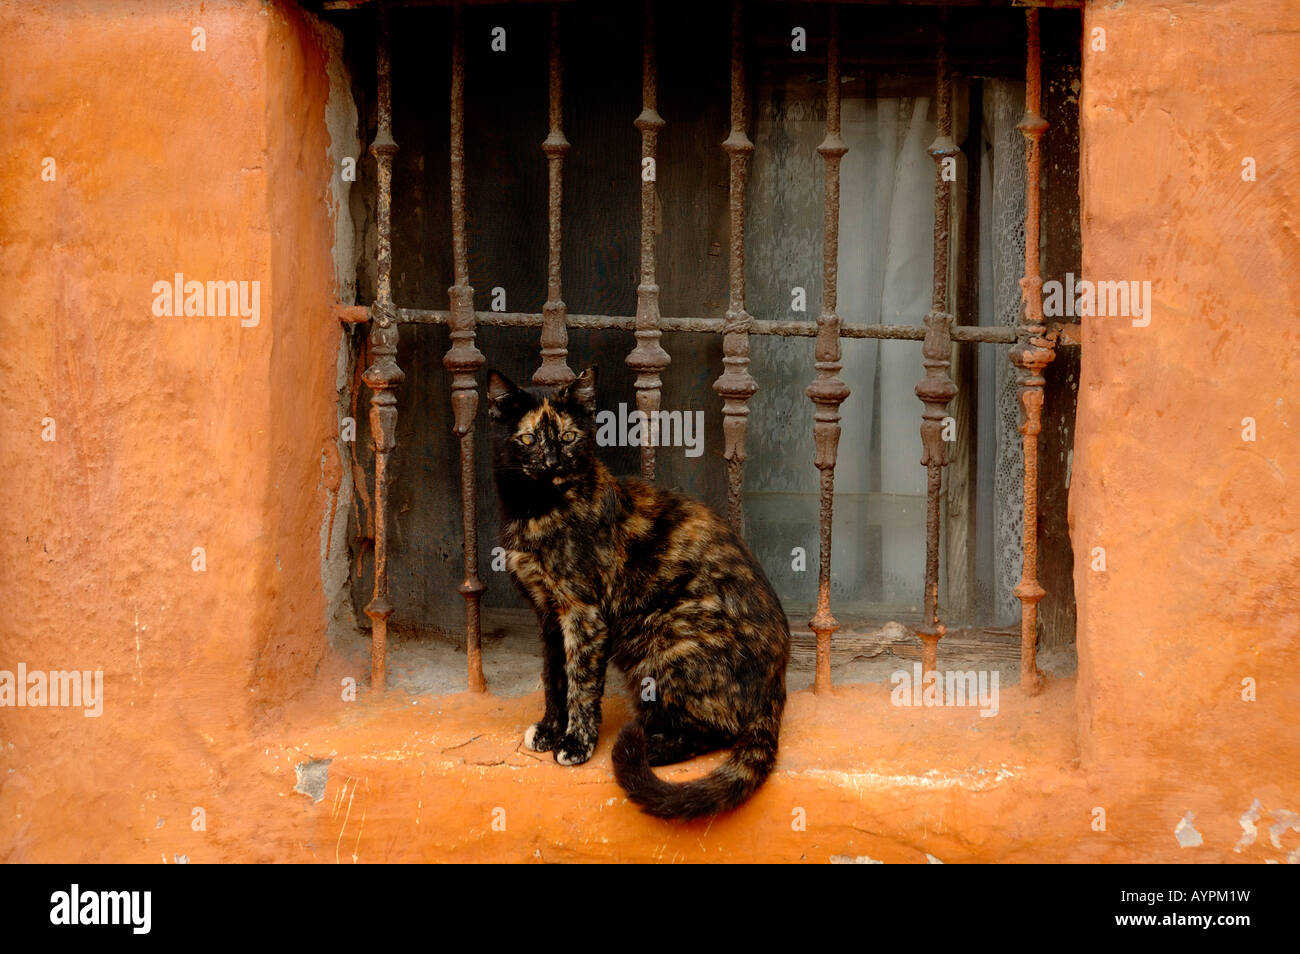 De color marrón rojizo y gato negro en la ventana Foto de stock